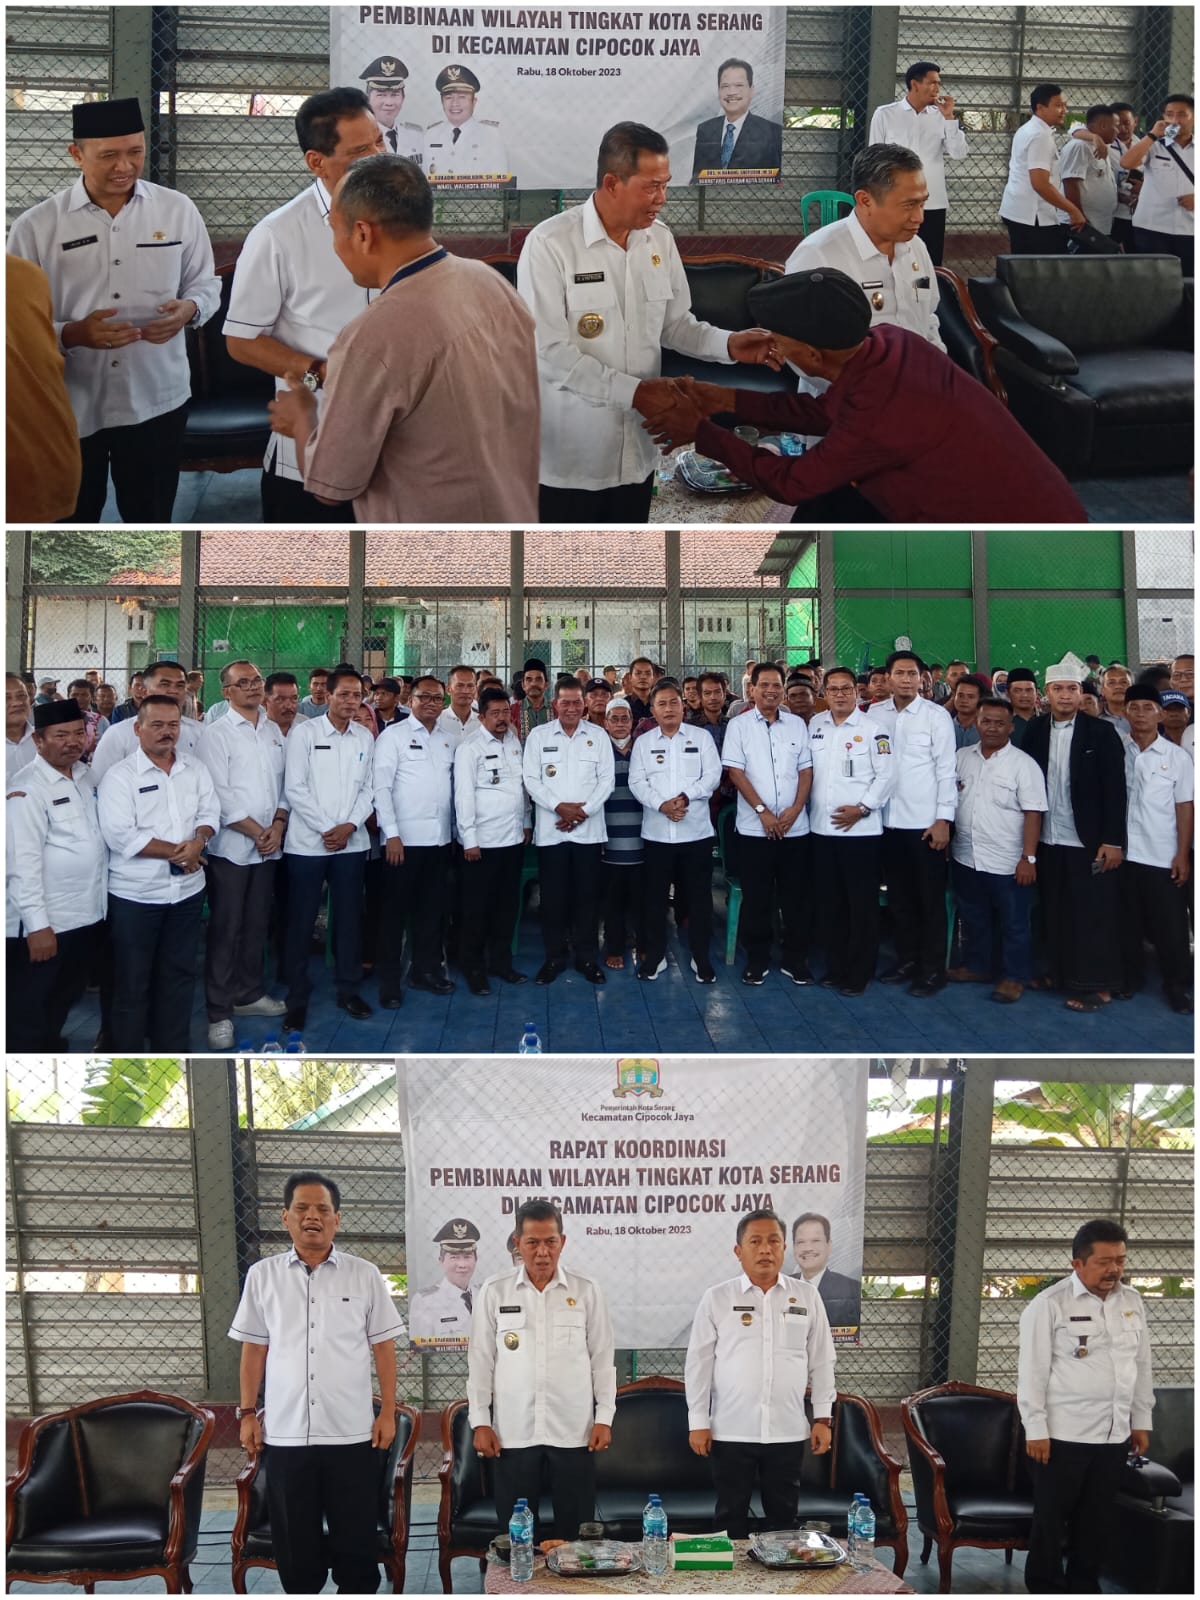 Walikota dan Wakil Hadir di Pembinaan Wilayah Tingkat Kota Serang di Cipocok Jaya